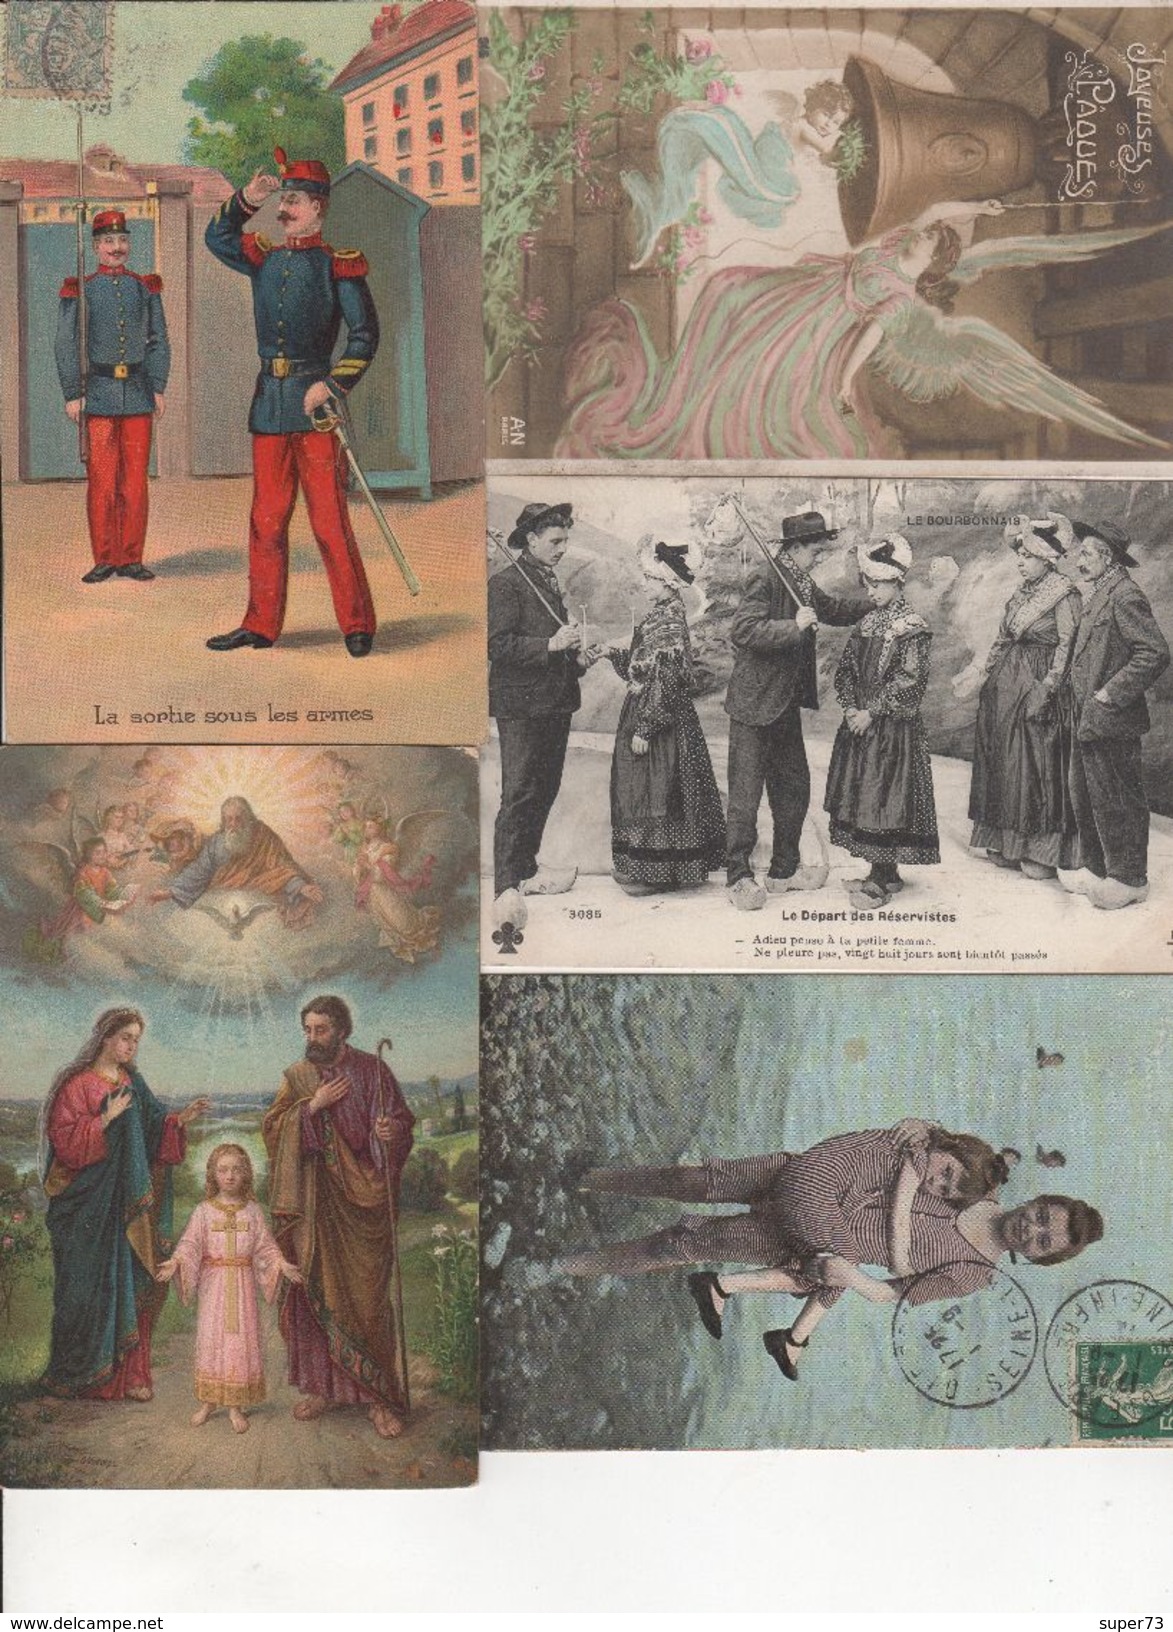 Lot divers de 95 cartes postales anciennes : fantaisie , folklore , humour , caricature ... A voir